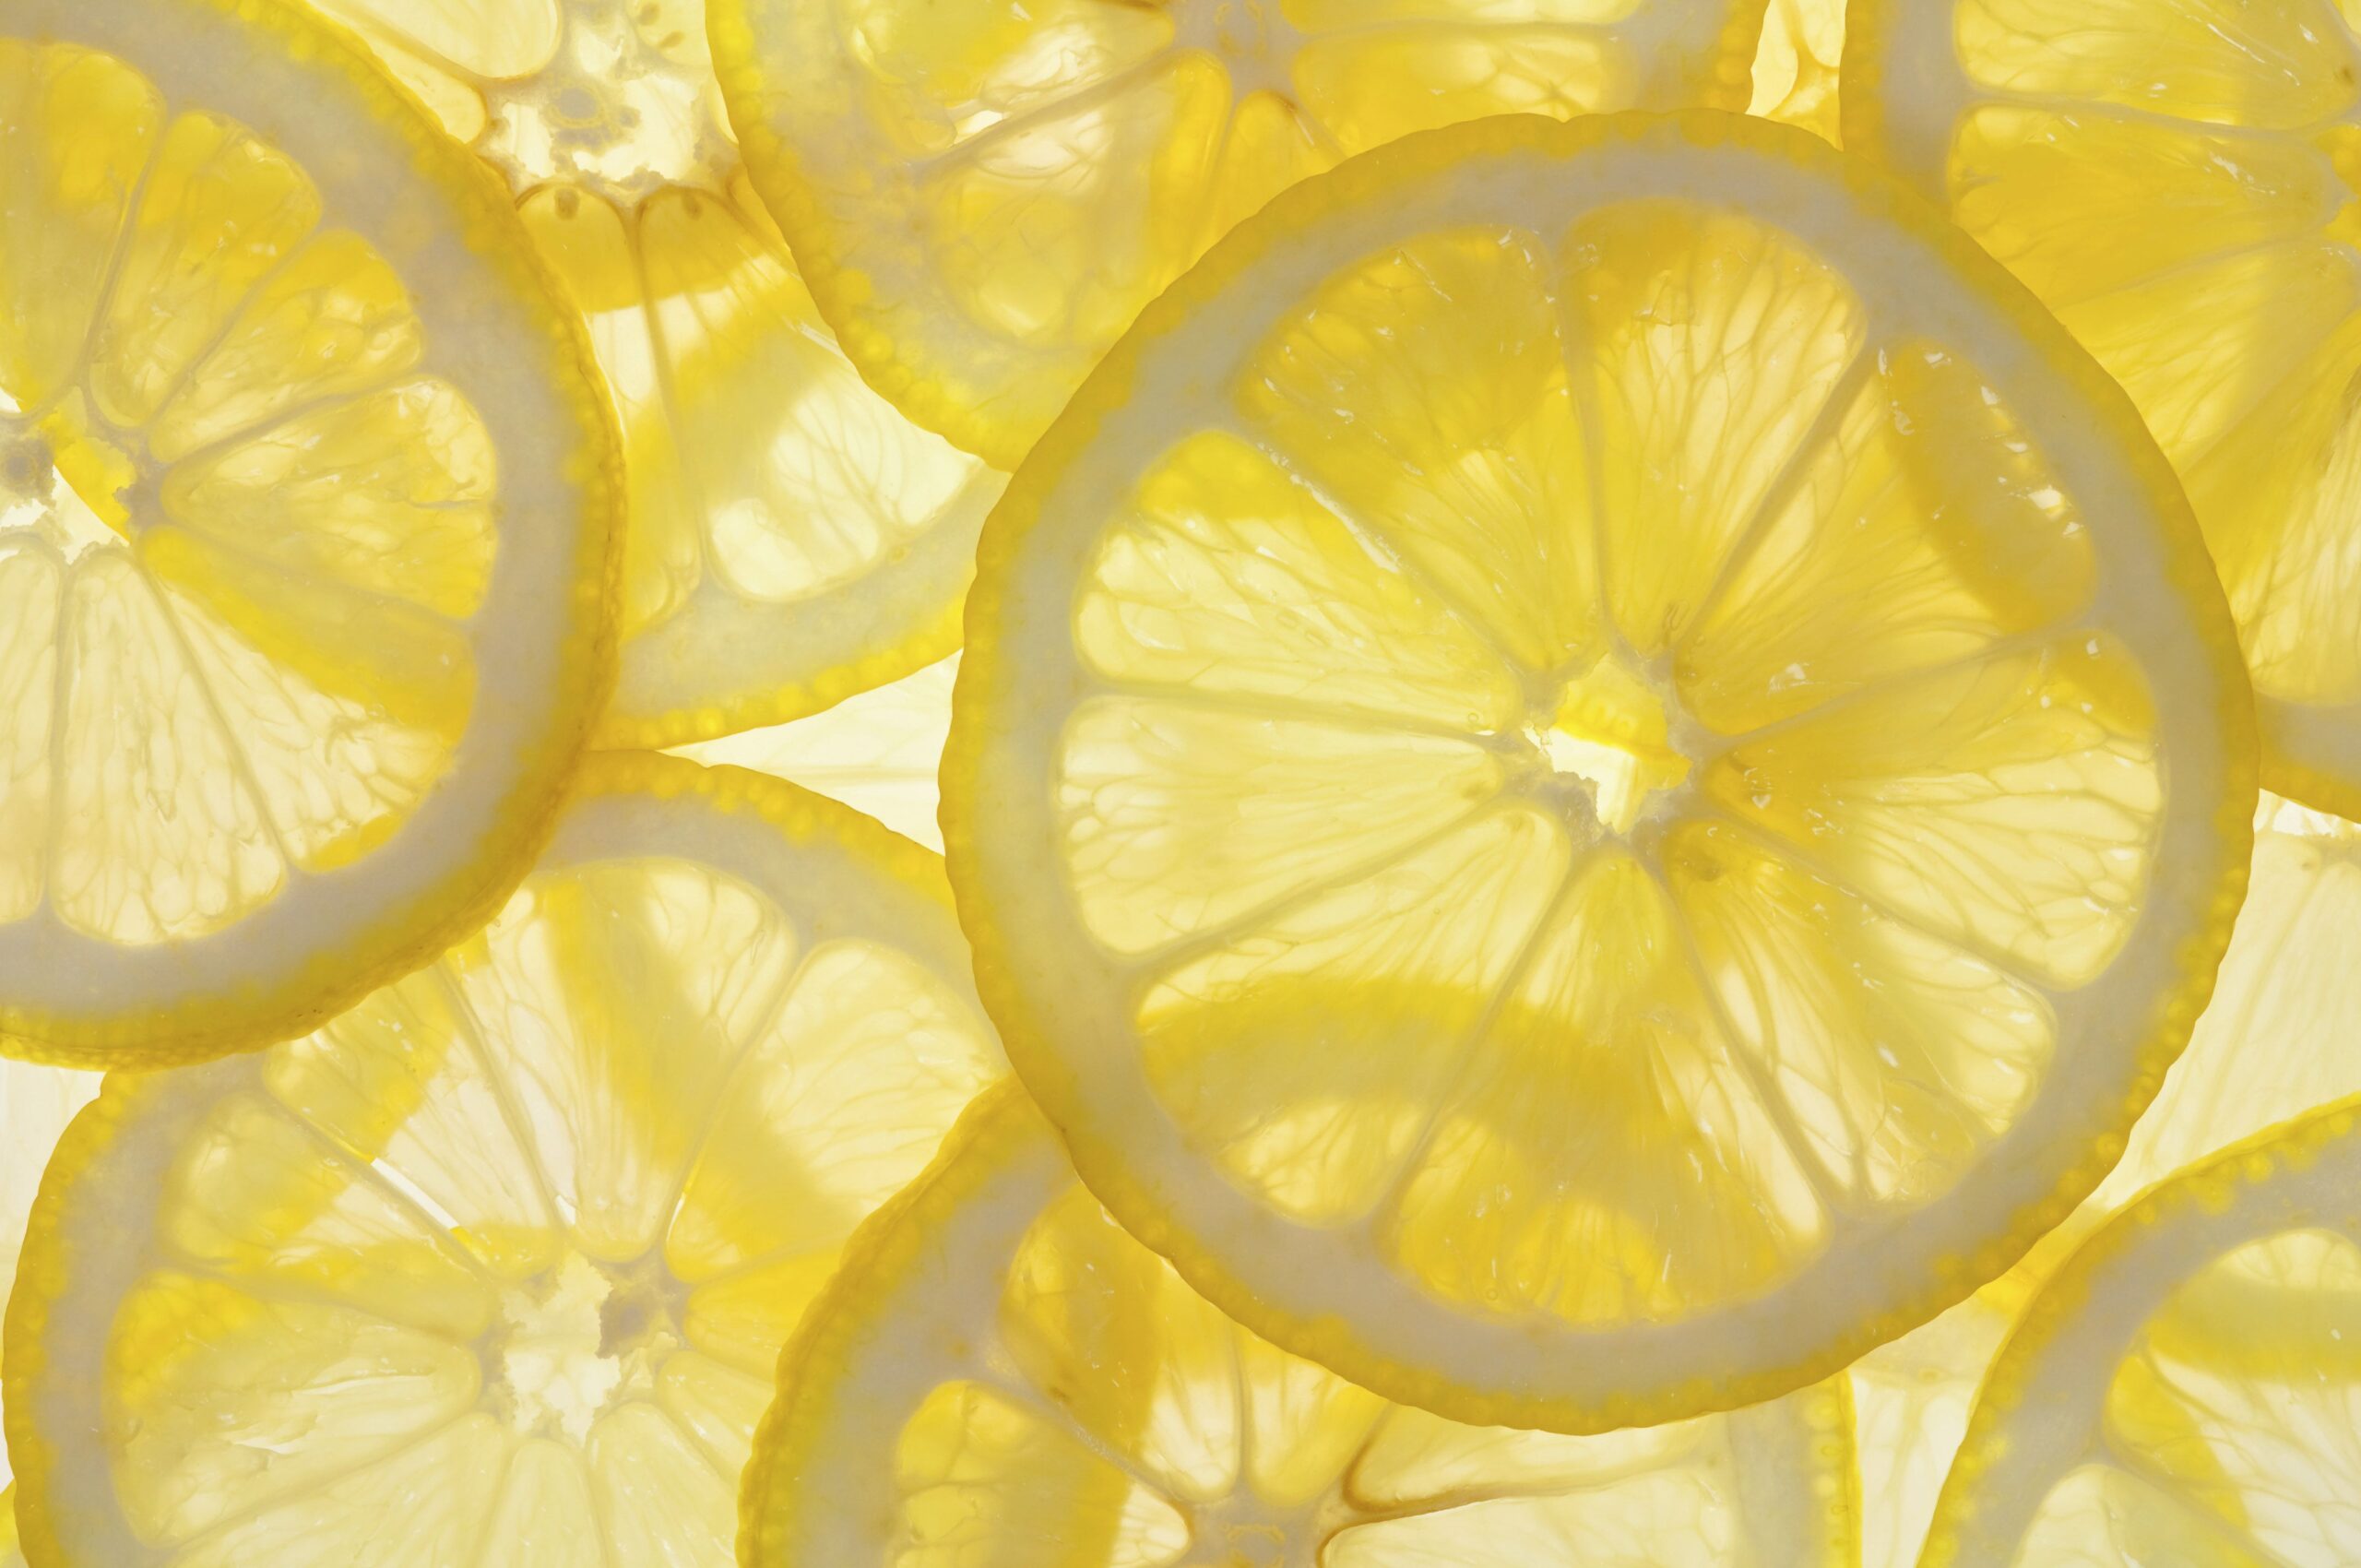 La dieta del limone